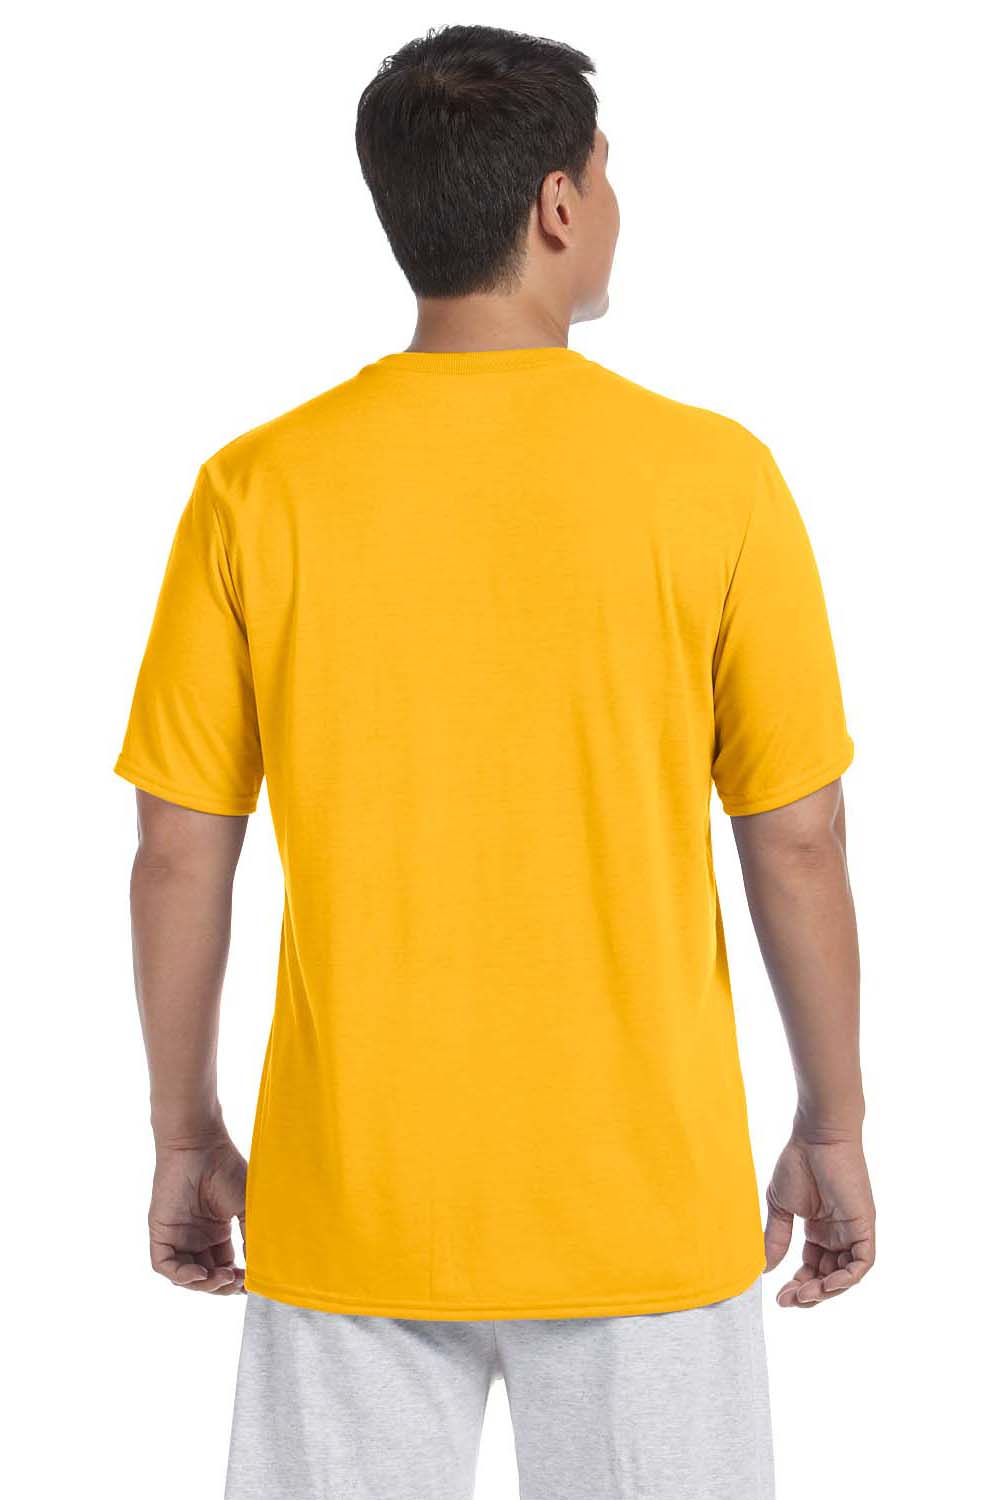 Gildan G420 Mens Performance Jersey Moisture Wicking Short Sleeve Crewneck T-Shirt Gold Back